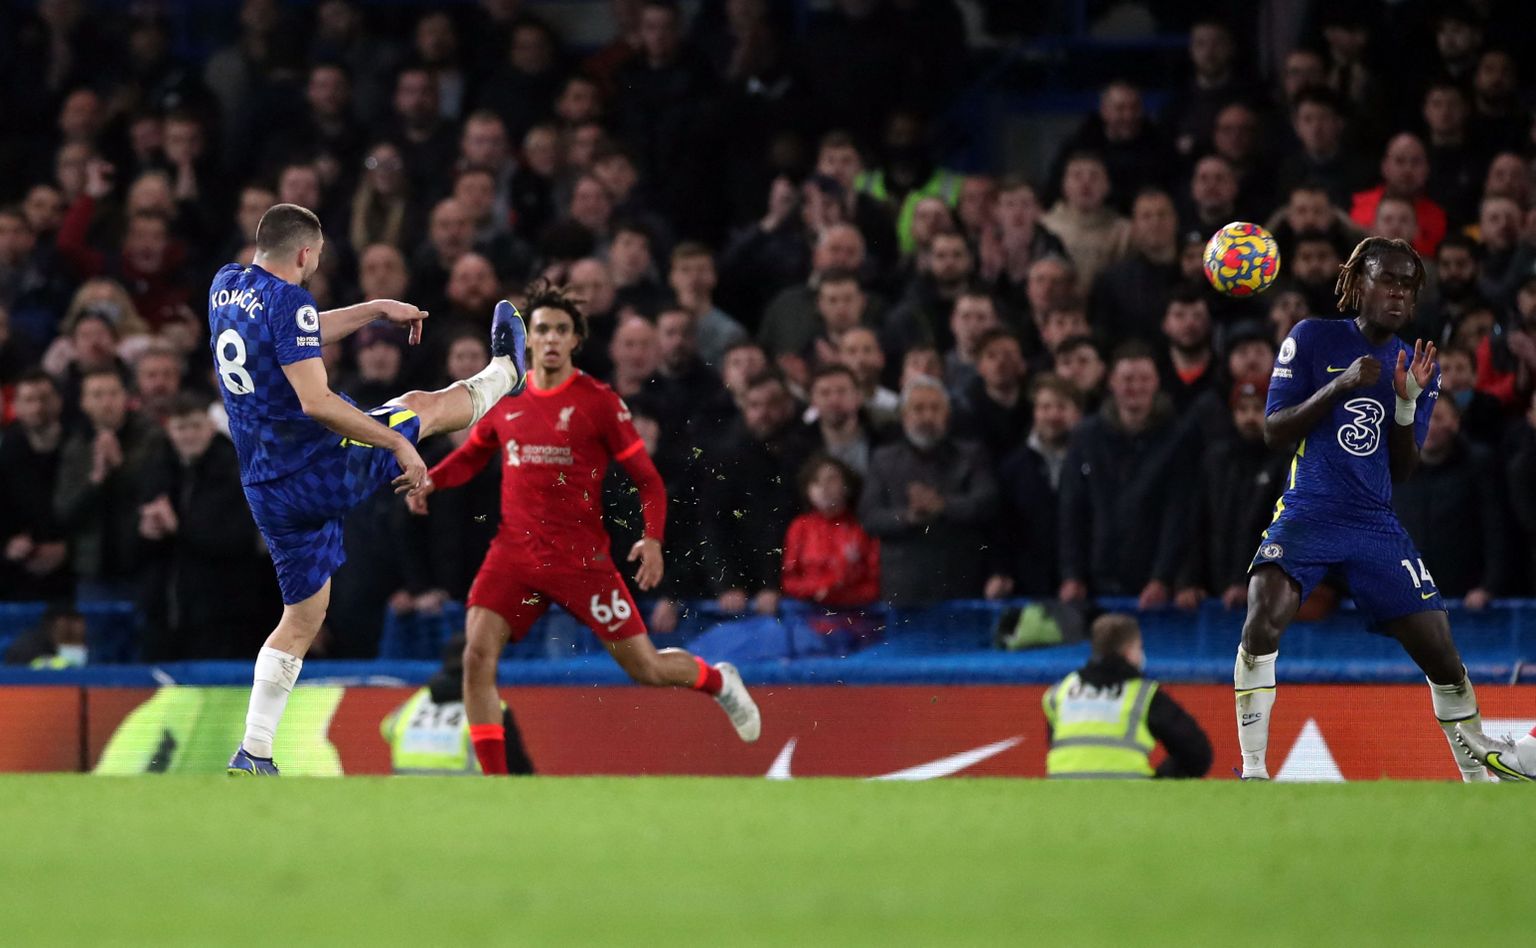 Kohtumise ilusaima värava lõi Chelsea poolkaitsja Mateo Kovacic (nr 8).